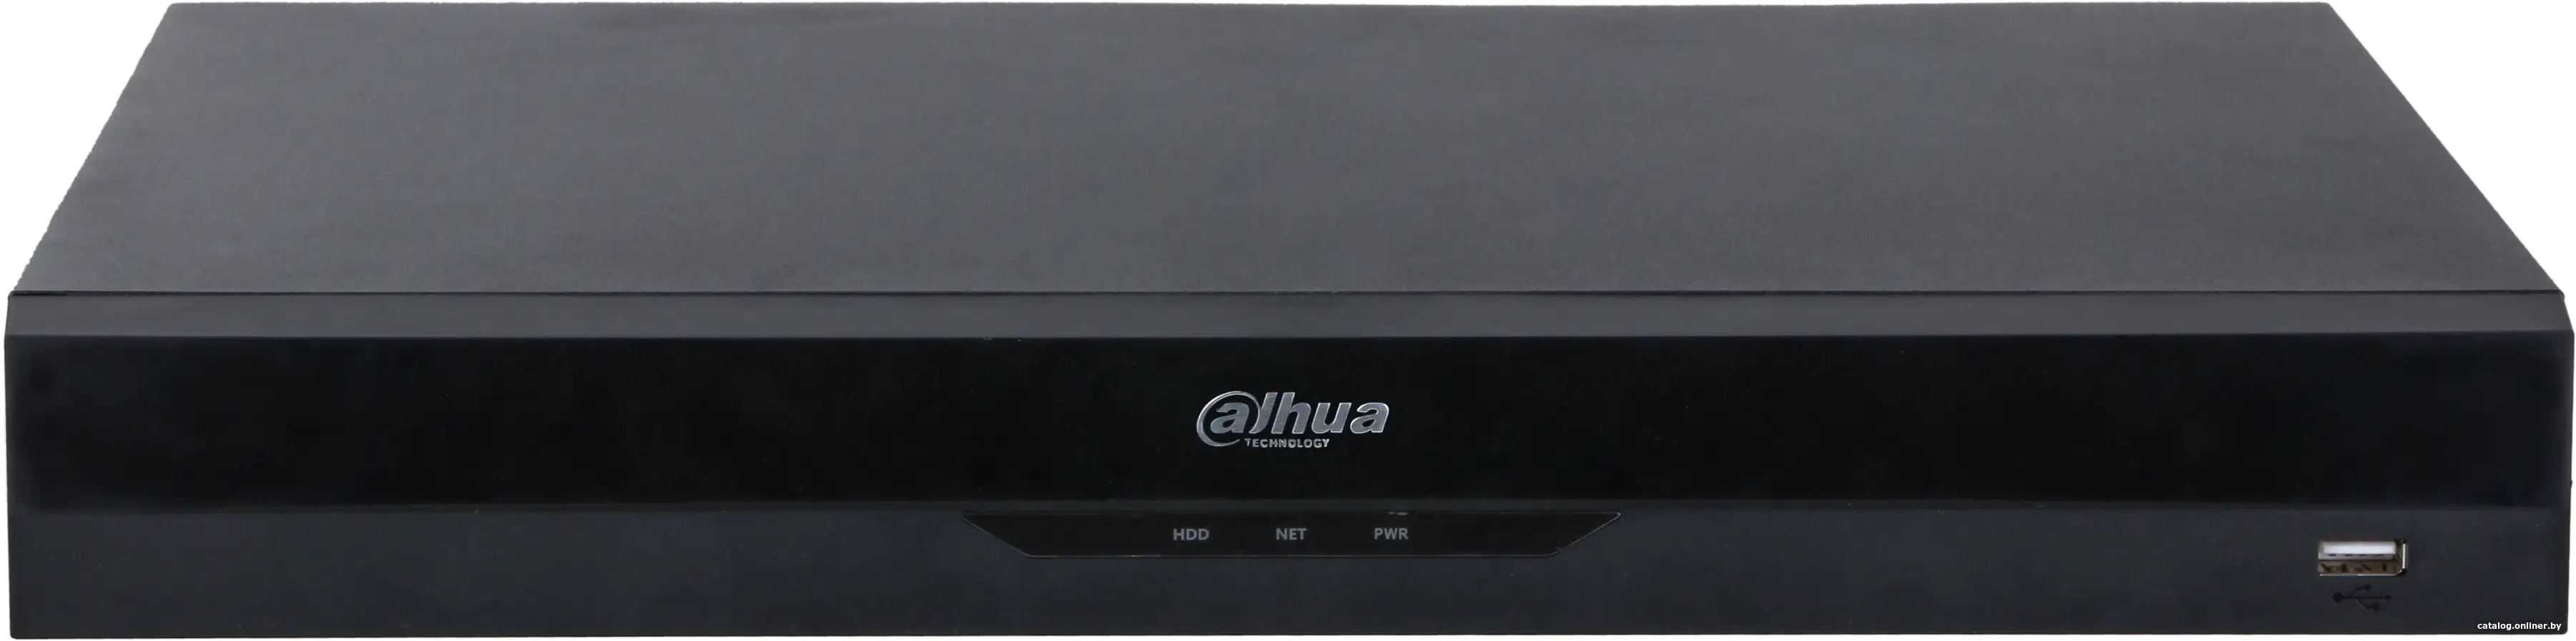 Купить Видеорегистратор наблюдения Dahua DHI-NVR5208-8P-EI, цена, опт и розница